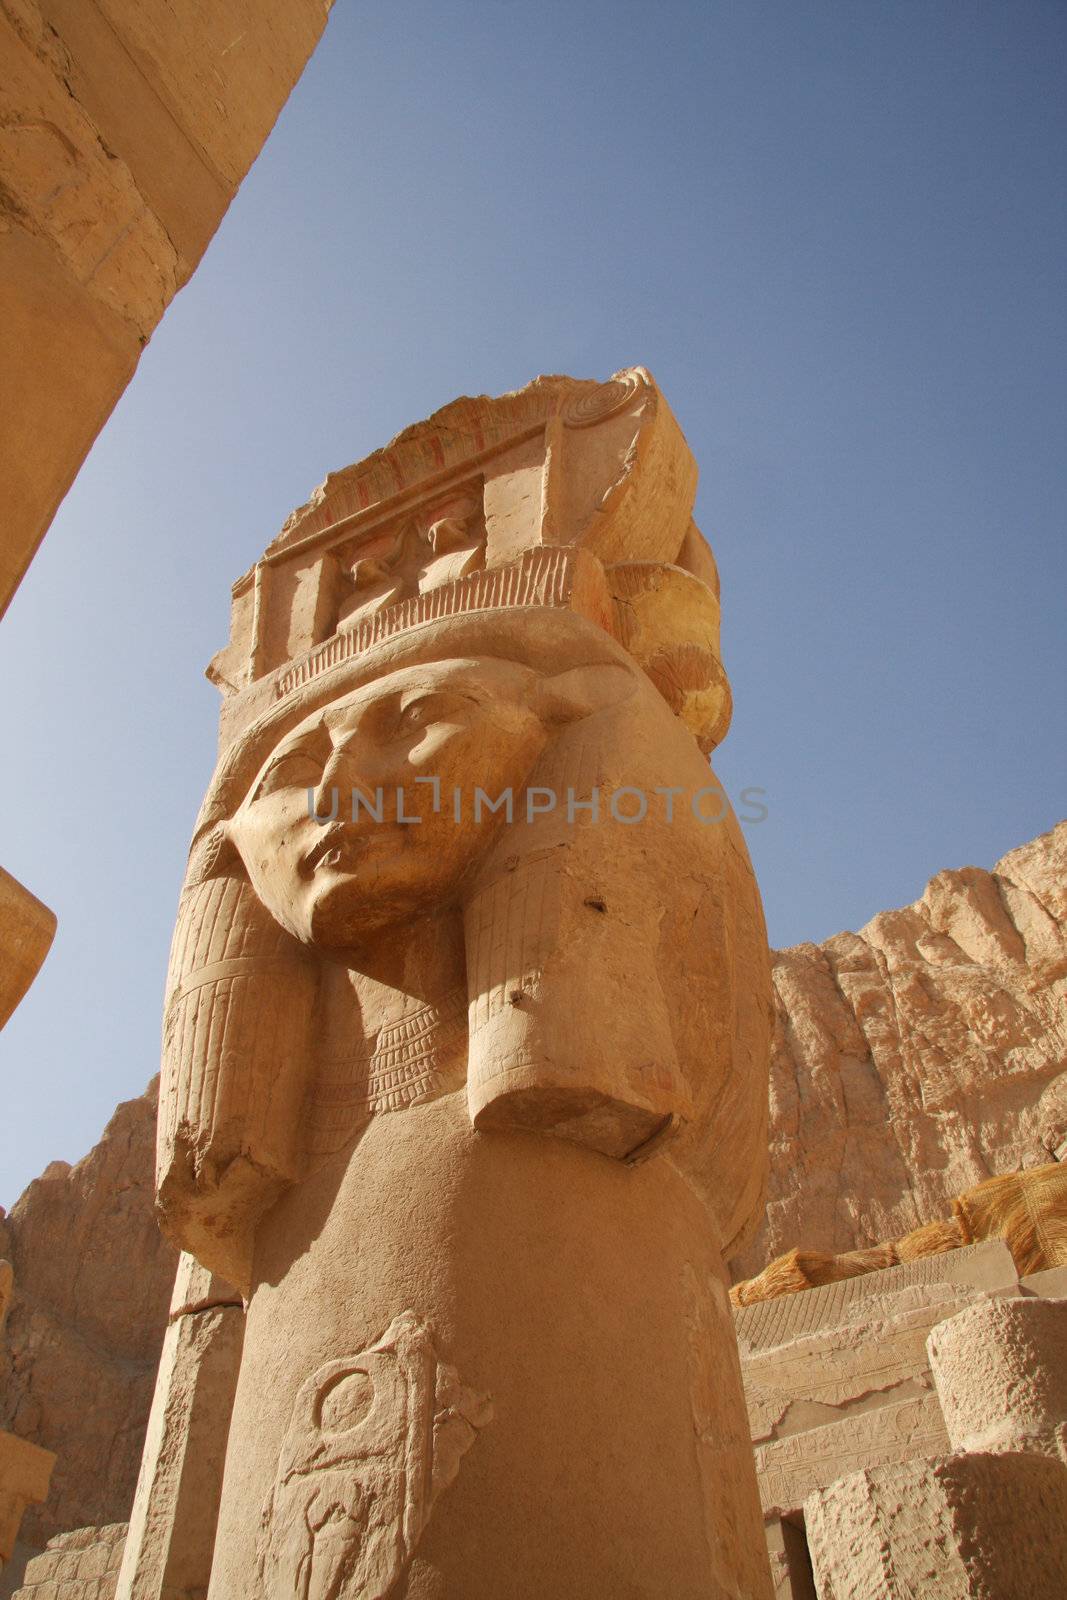 Temple of Queen Hatshepsut, main column sculpture